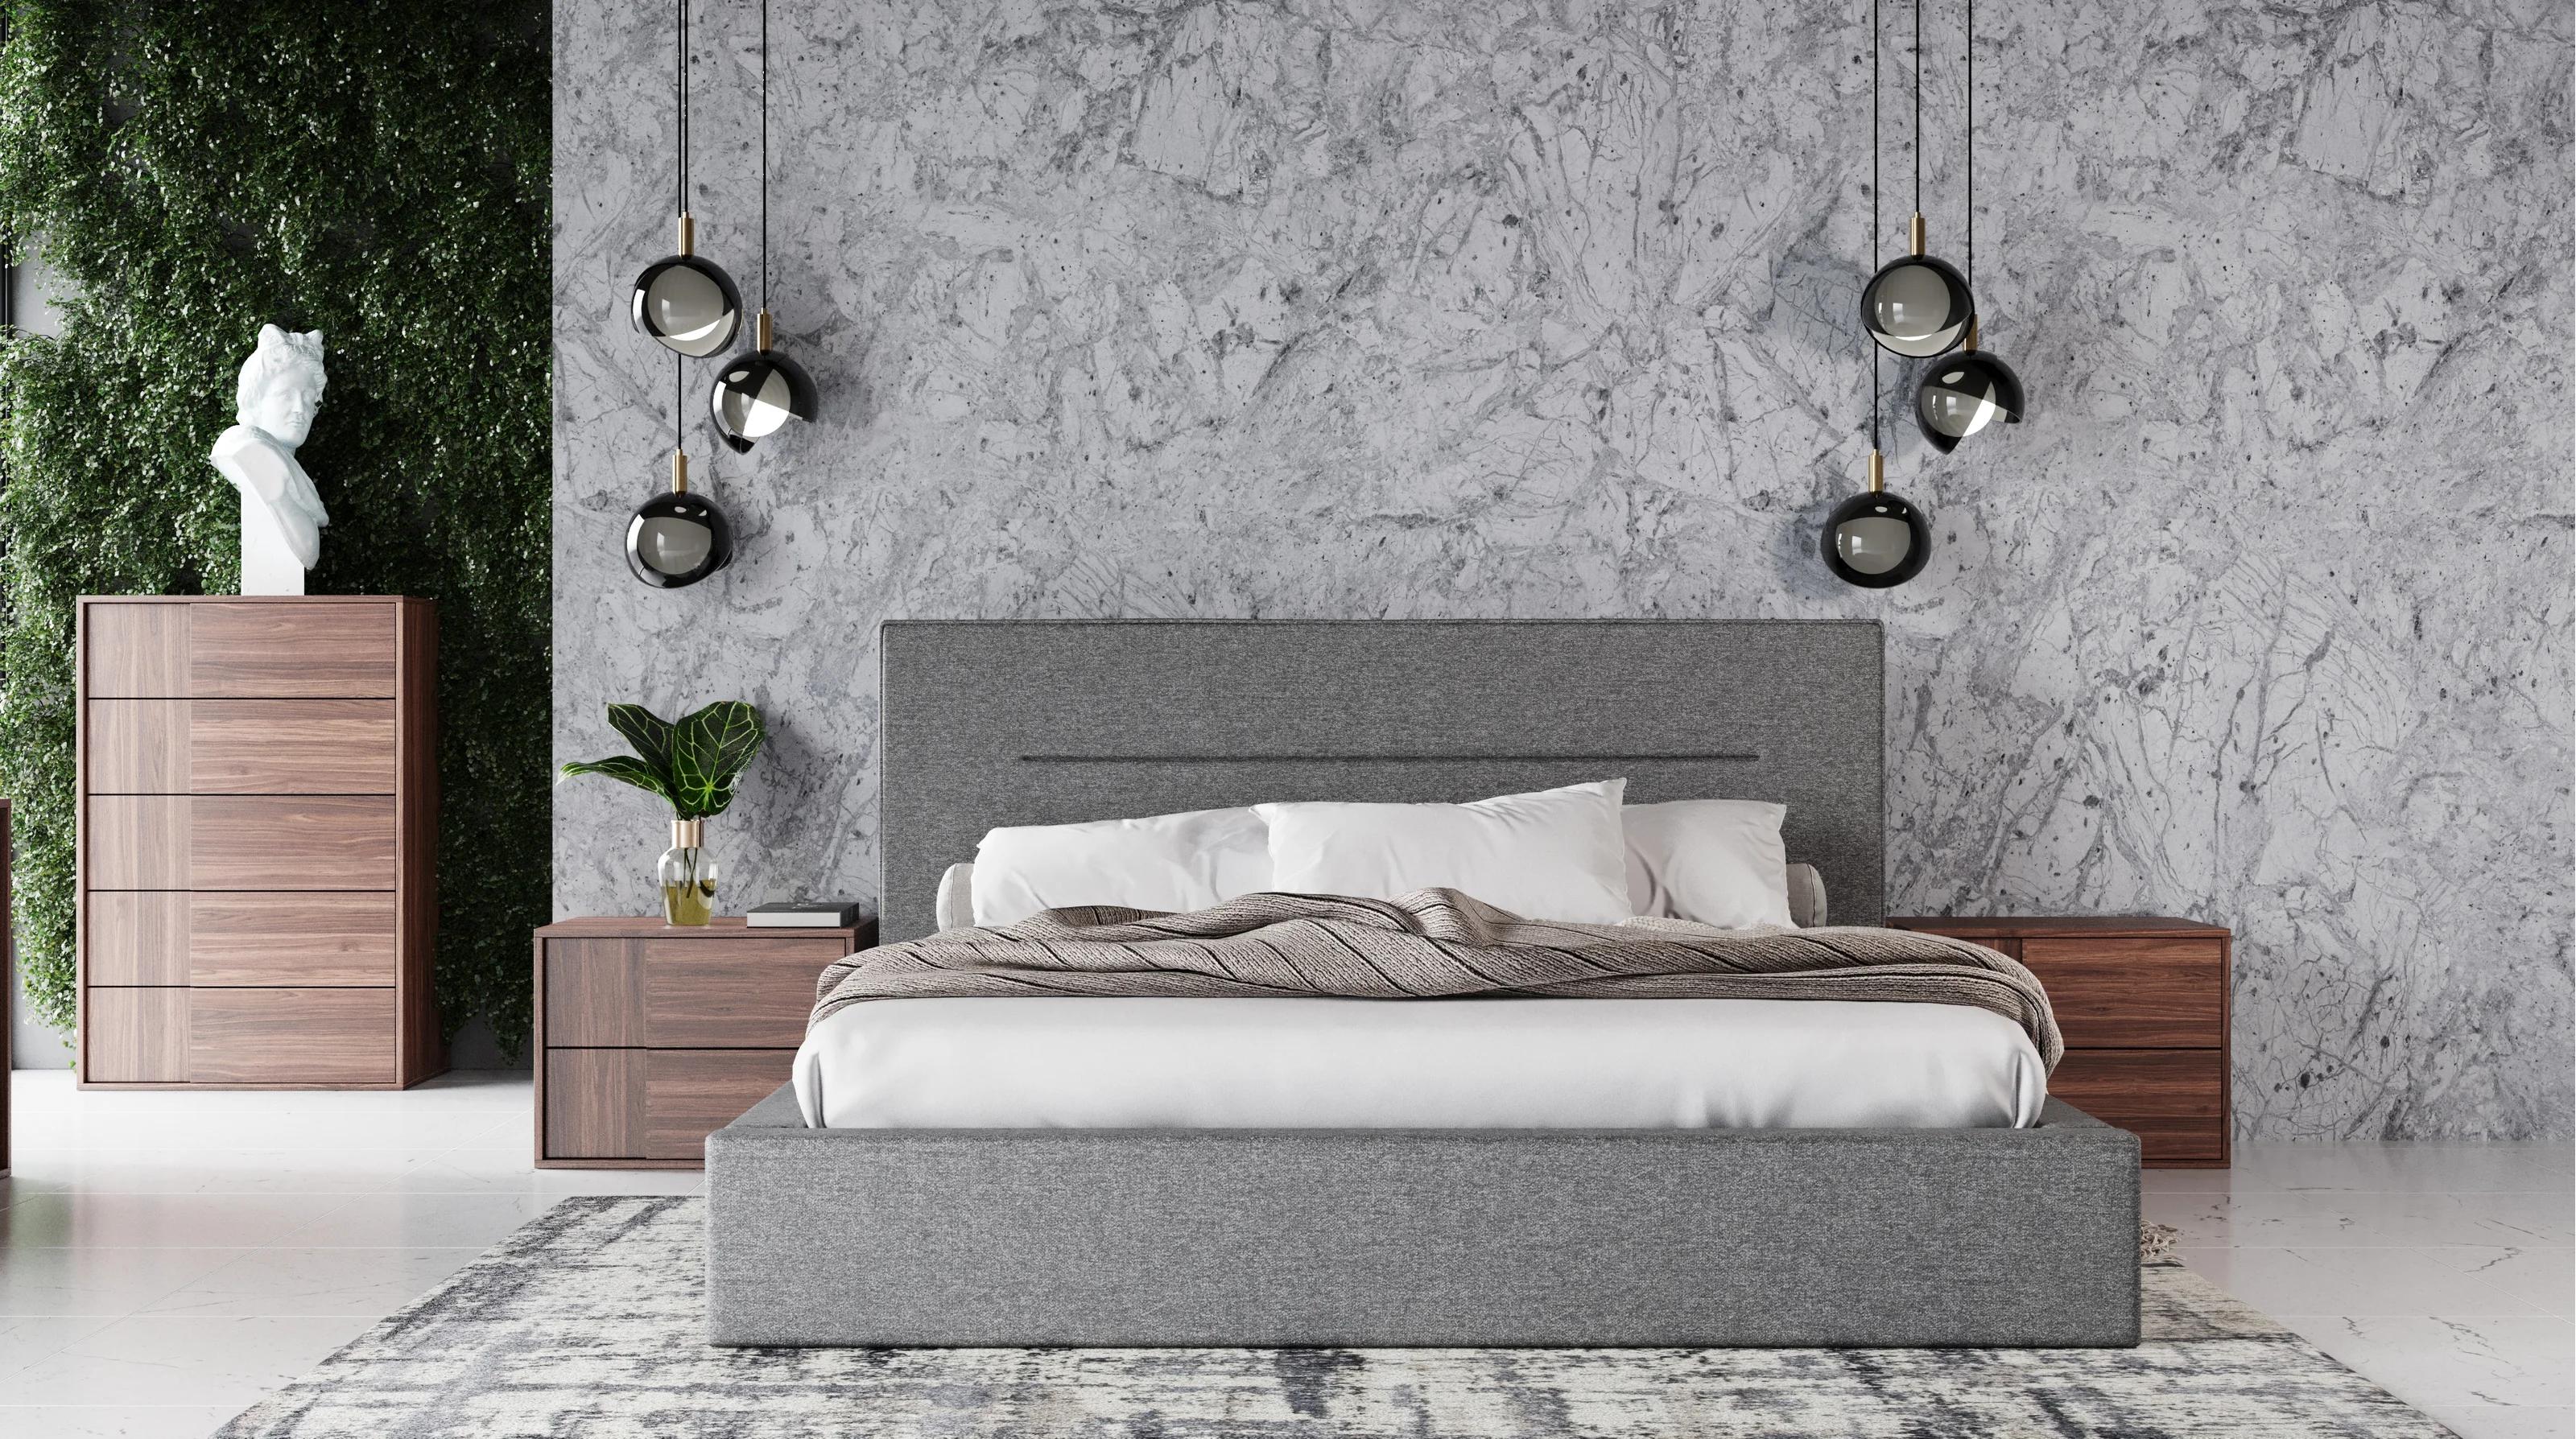 

    
VGACJULIANA-GRY-BED-Q-3pcs Brown & Gray Fabric Queen  Bed Panel Bedroom Set 3Pcs by VIG Nova Domus Juliana
